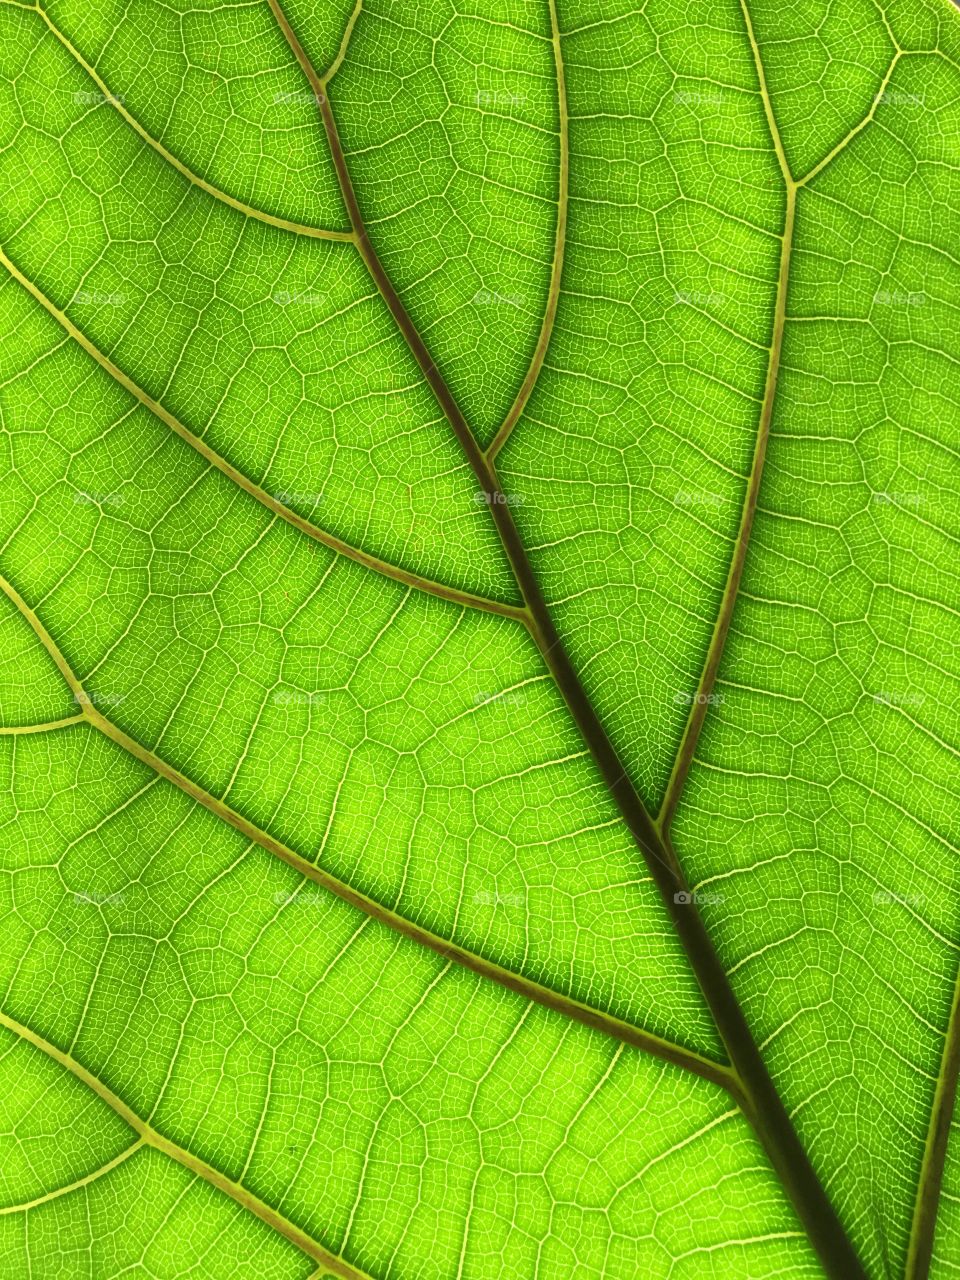 Sunlight shining through a leaf 